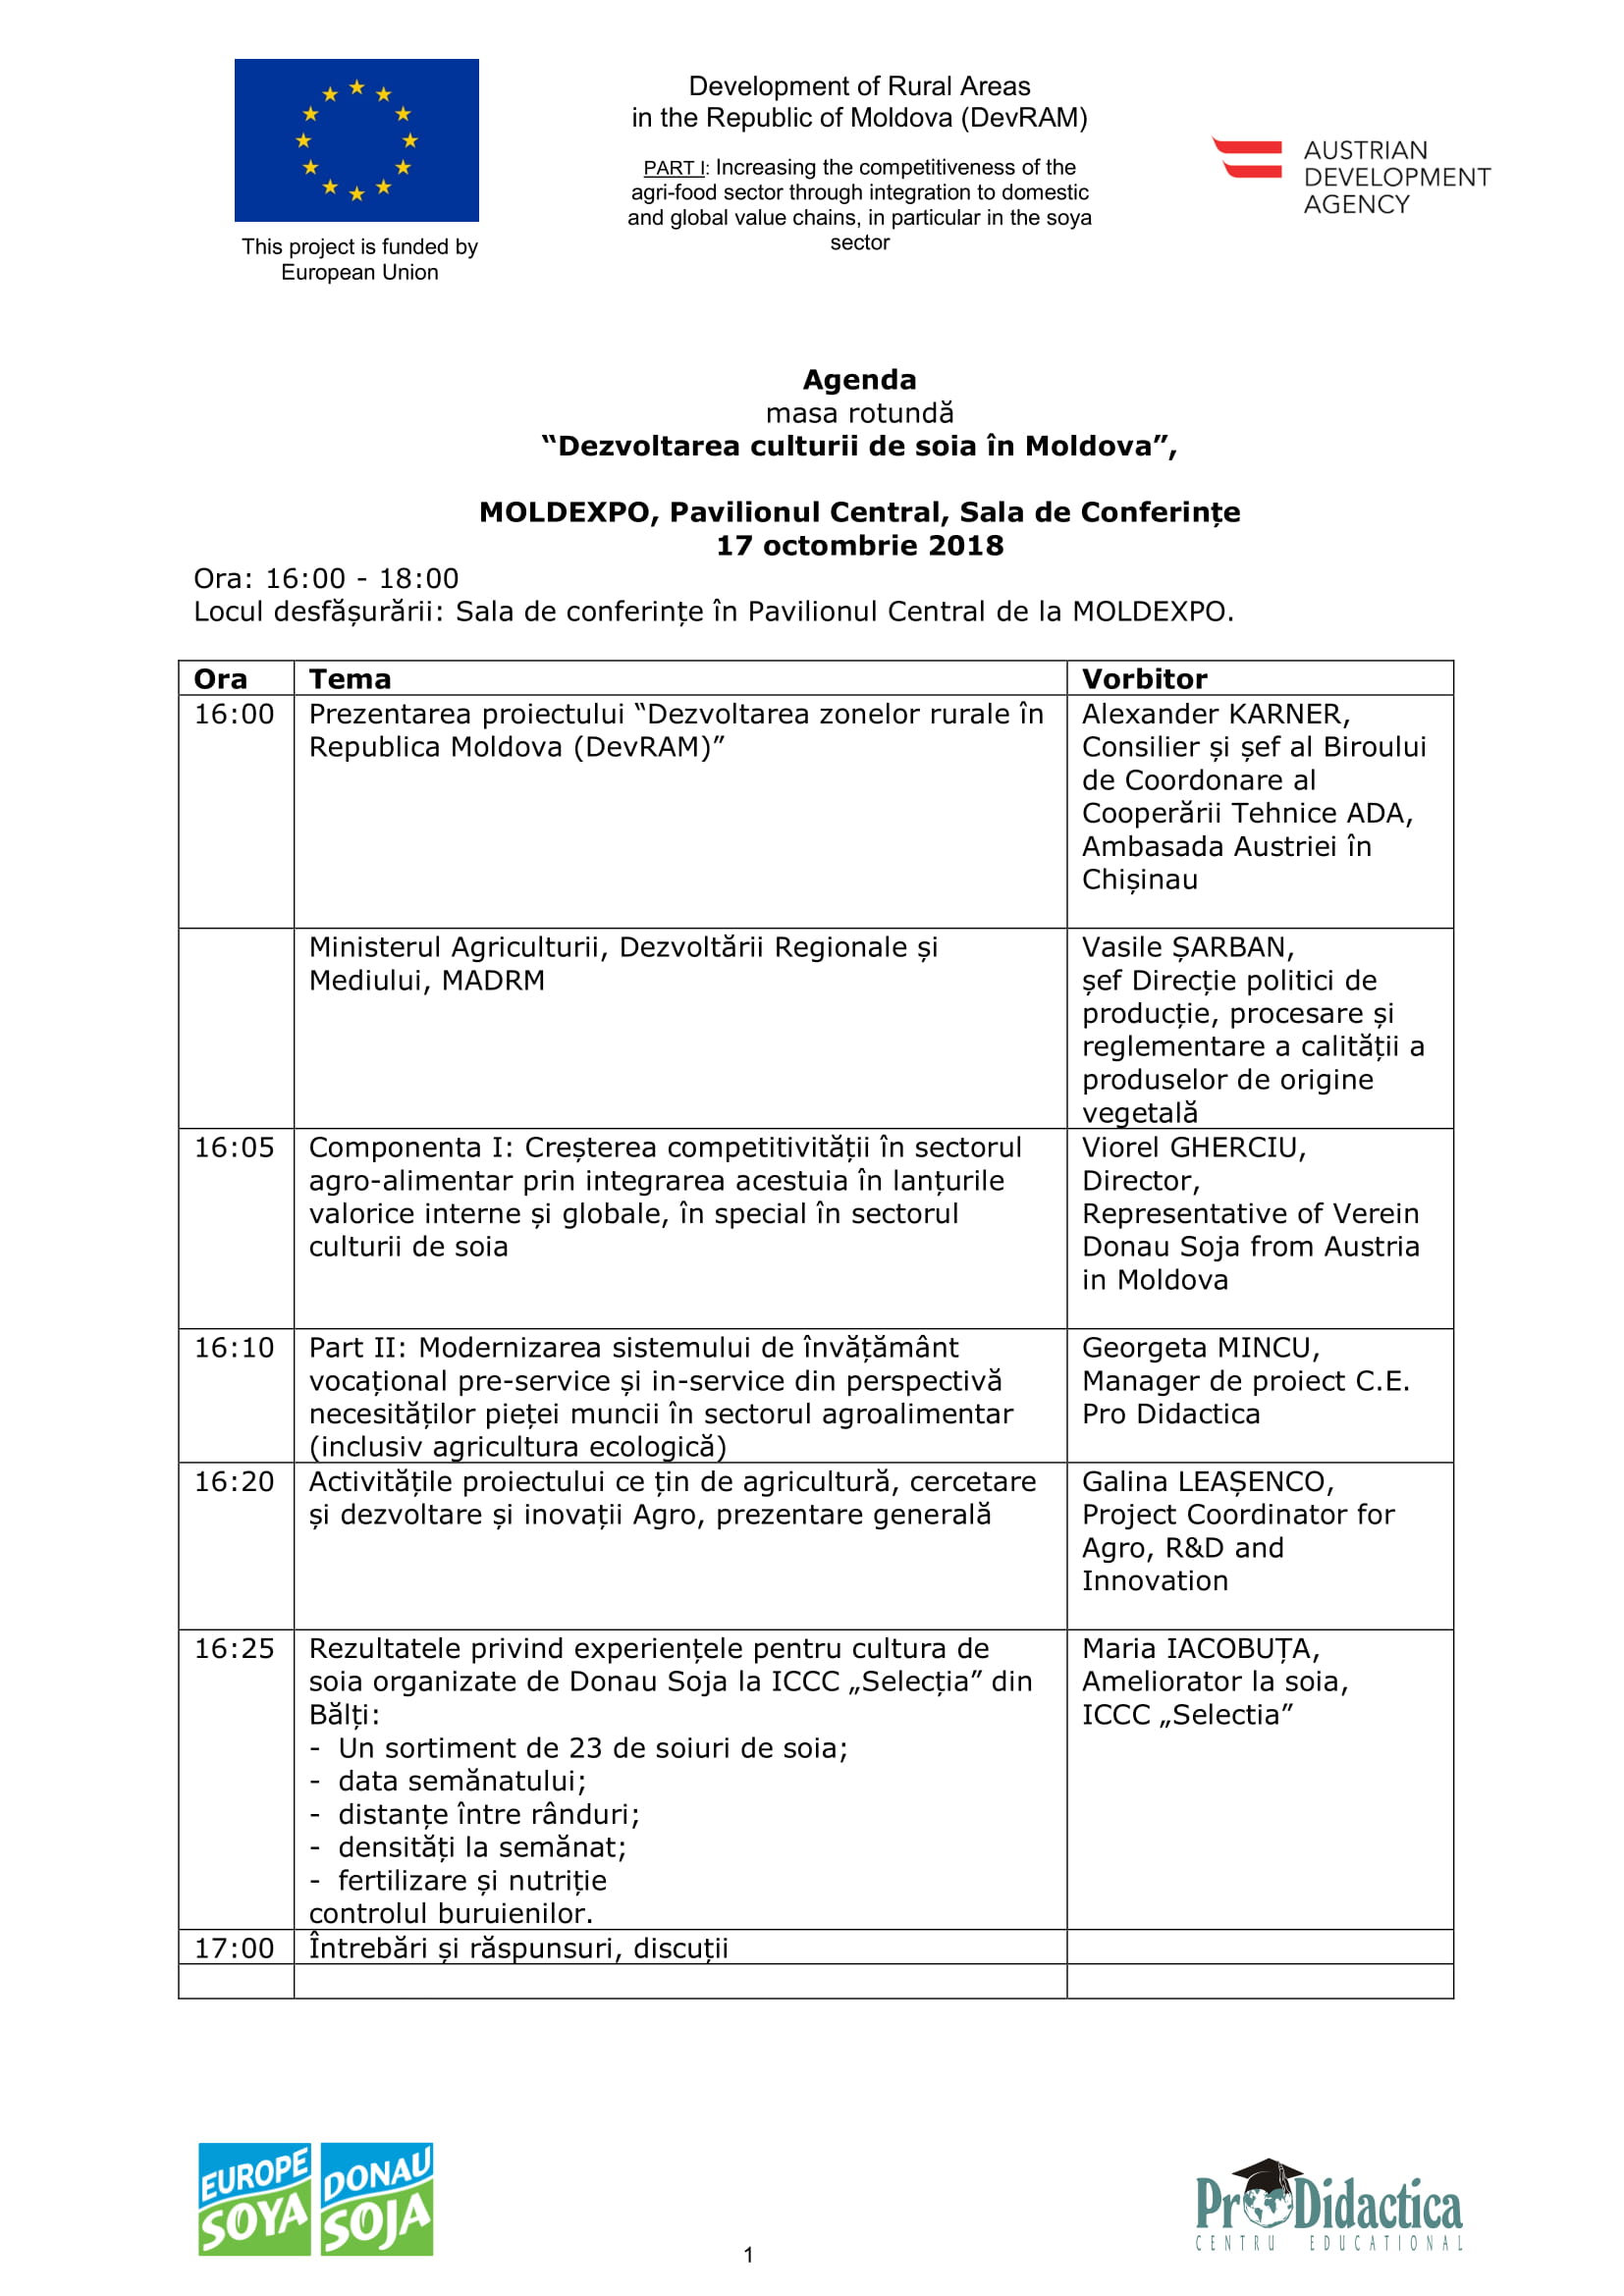 Agenda Masa Rotunda la MOLDEXPO ROM-1